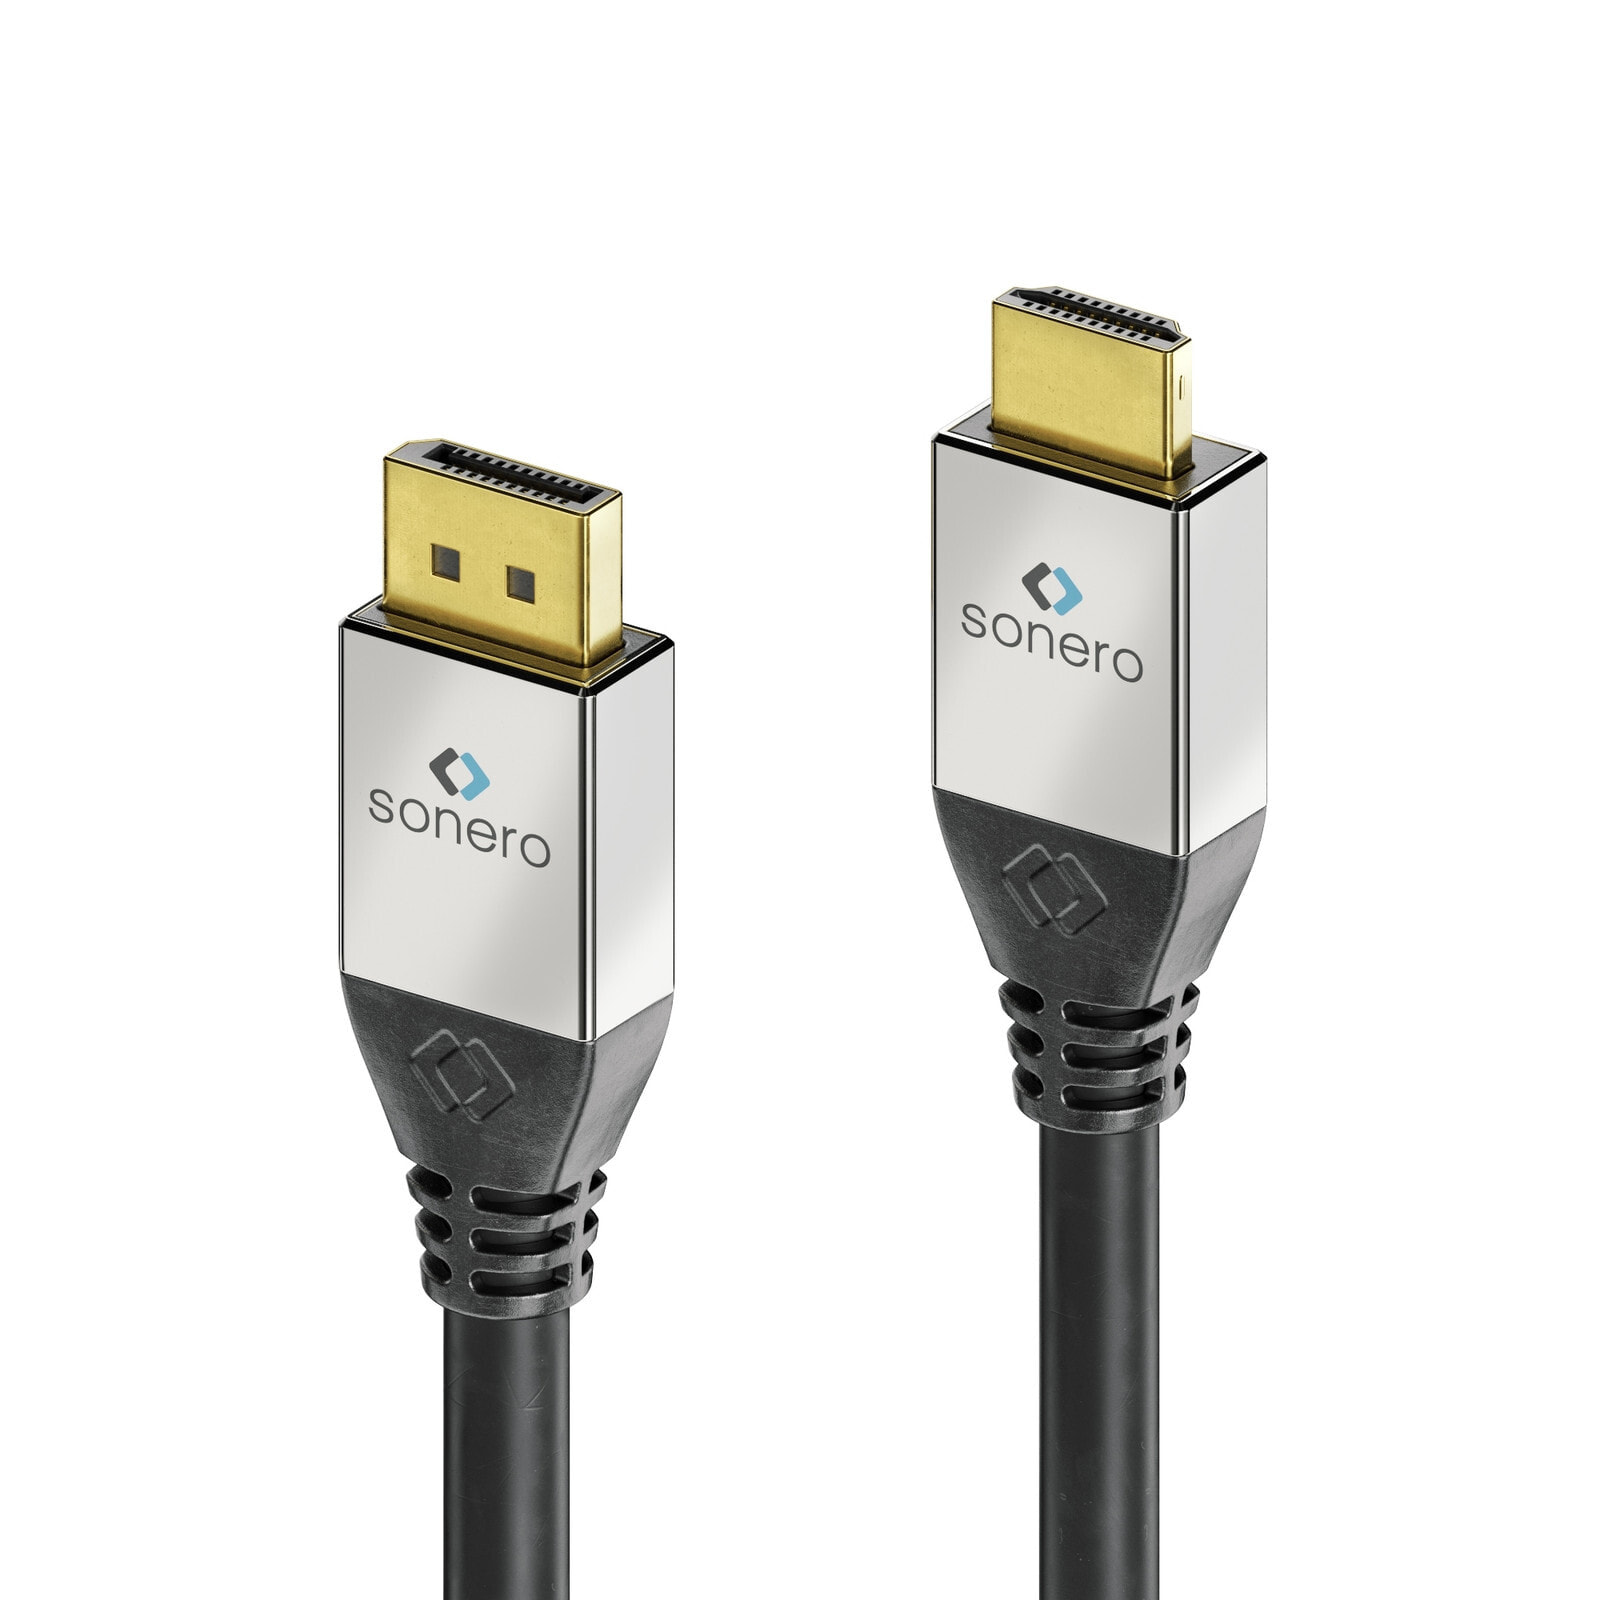 Компьютерный разъем или переходник PureLink GmbH sonero DisplayPort to HDMI Cable 3.0m. Cable length: 3 m, Connector 1: DisplayPort, Connector 2: HDMI. Cable diameter: 7.3 mm